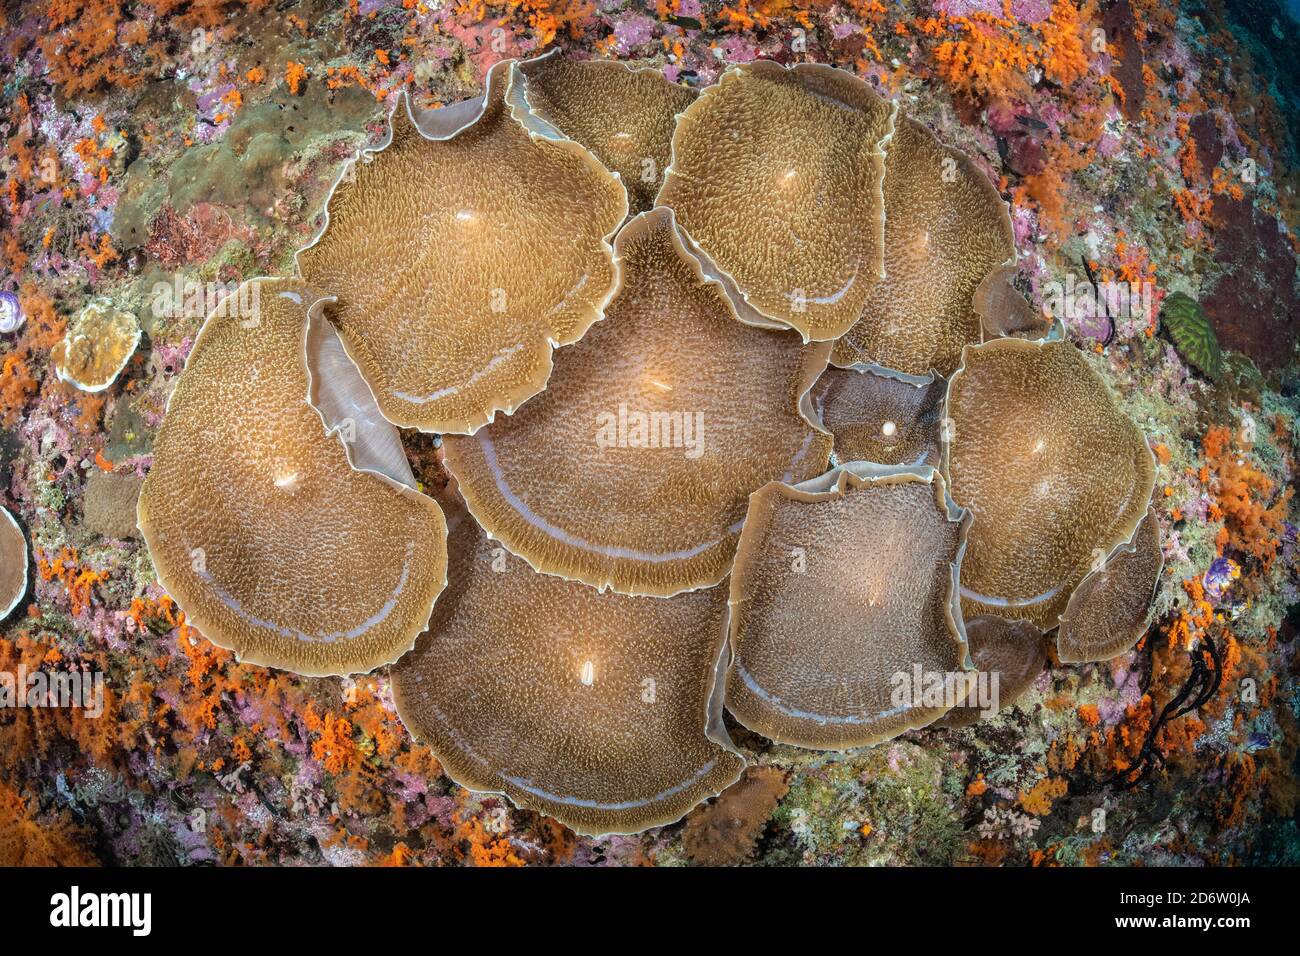 Agrégation de corallimororphes géants, Amplexidiscus fenestrafer. Raja Ampat, Papouasie occidentale, Indonésie Banque D'Images